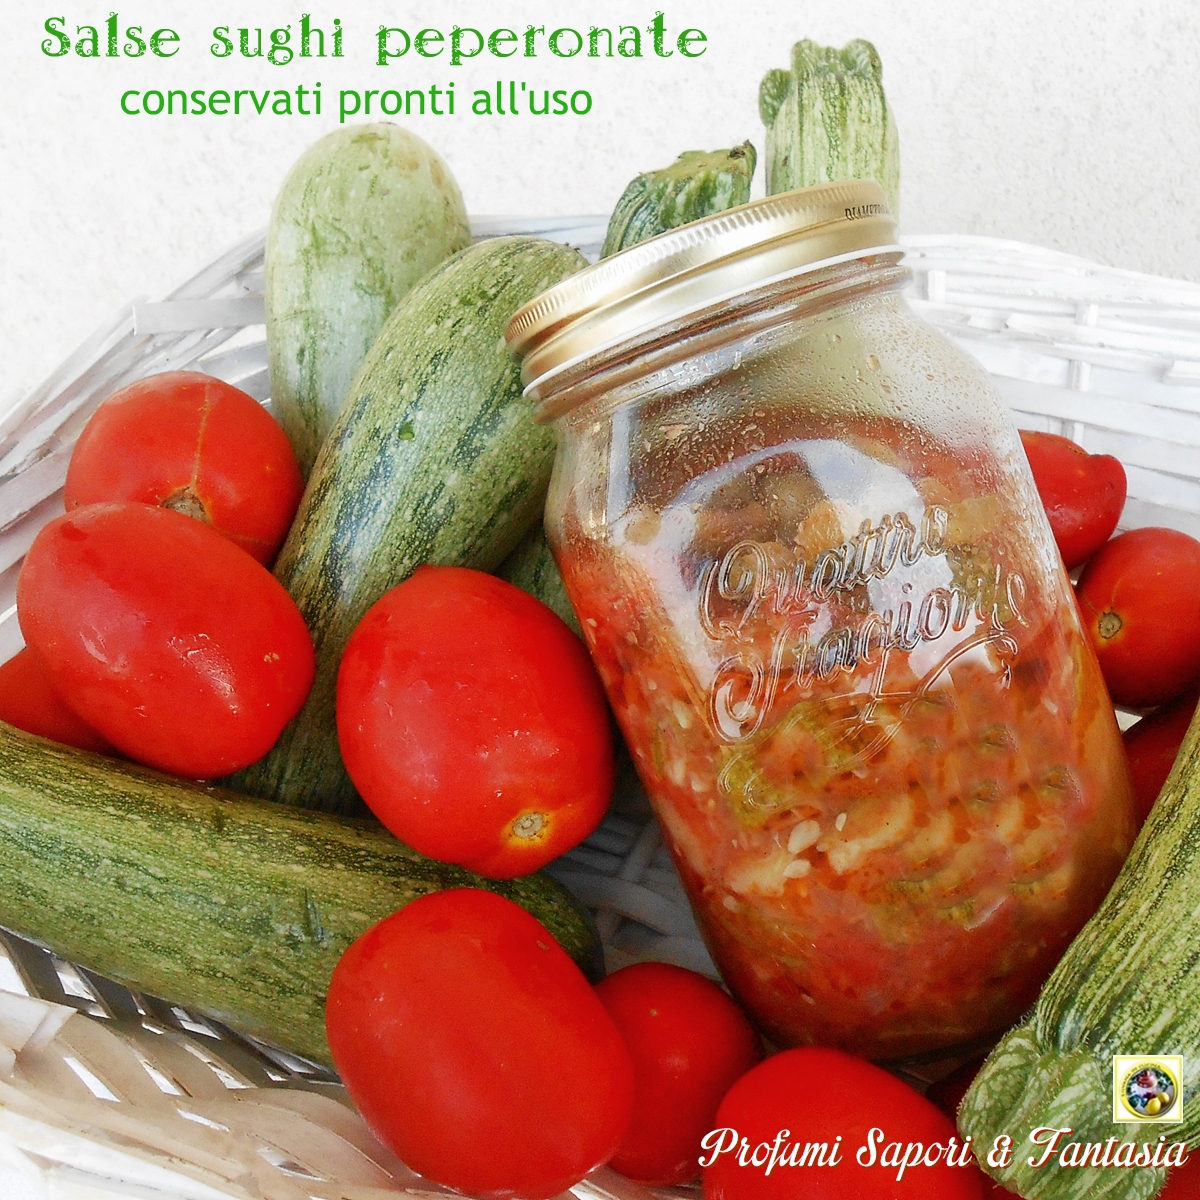 Salse sughi peperonate conservati pronti all'uso Blog profumi Sapori & Fantasia